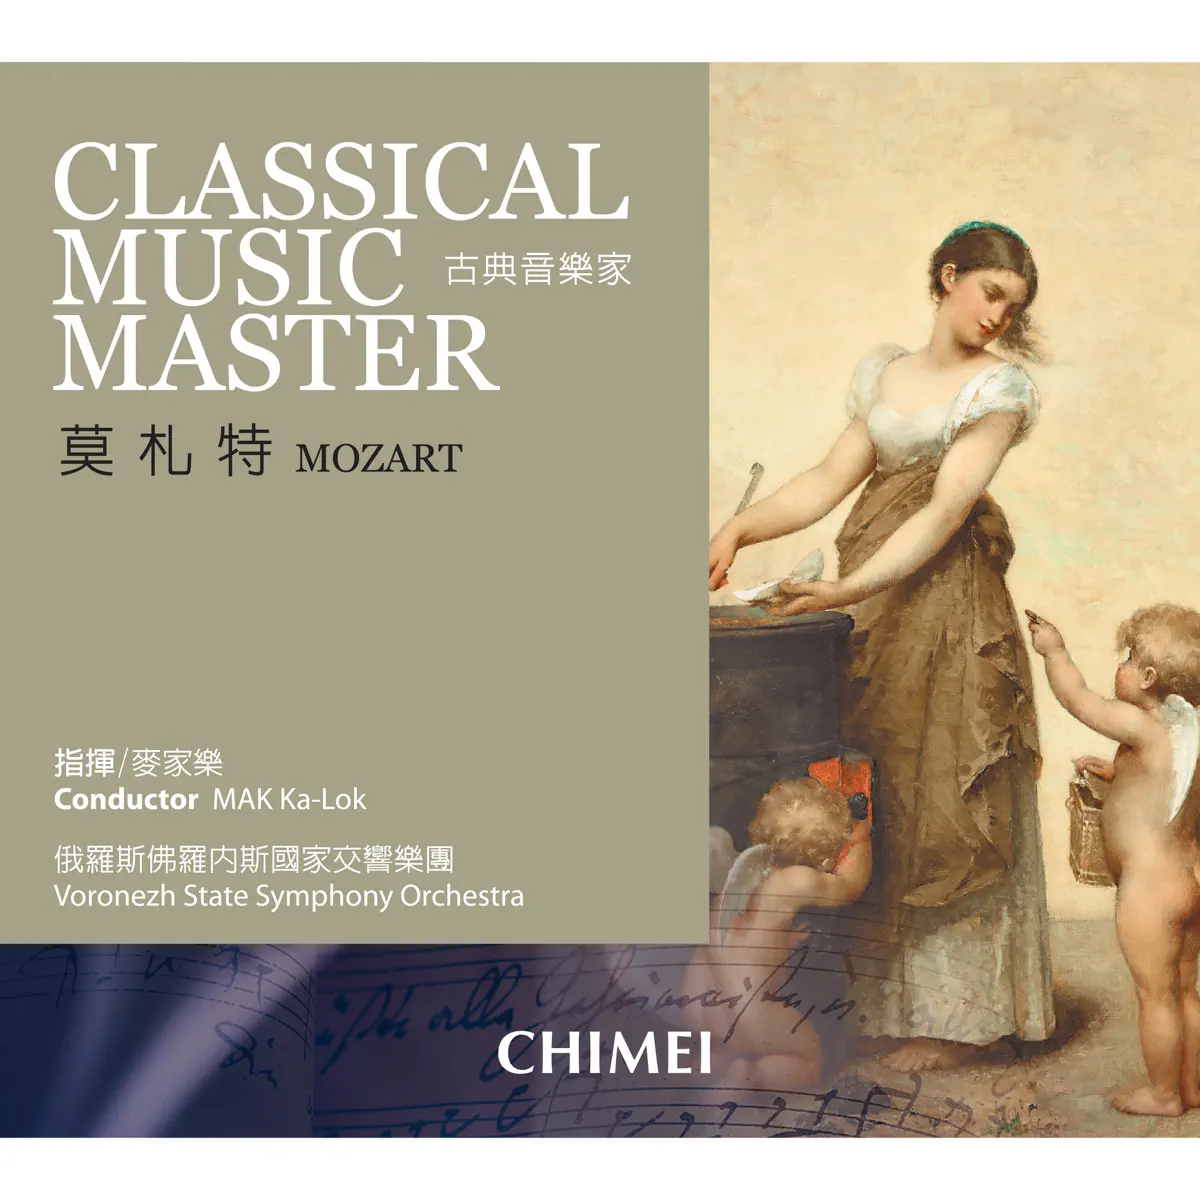 麥家樂 & 俄羅斯佛羅內斯國家交響樂團 - 古典音樂家: 莫札特 Classical Music Master: Mozart (2007) [iTunes Plus AAC M4A]-新房子